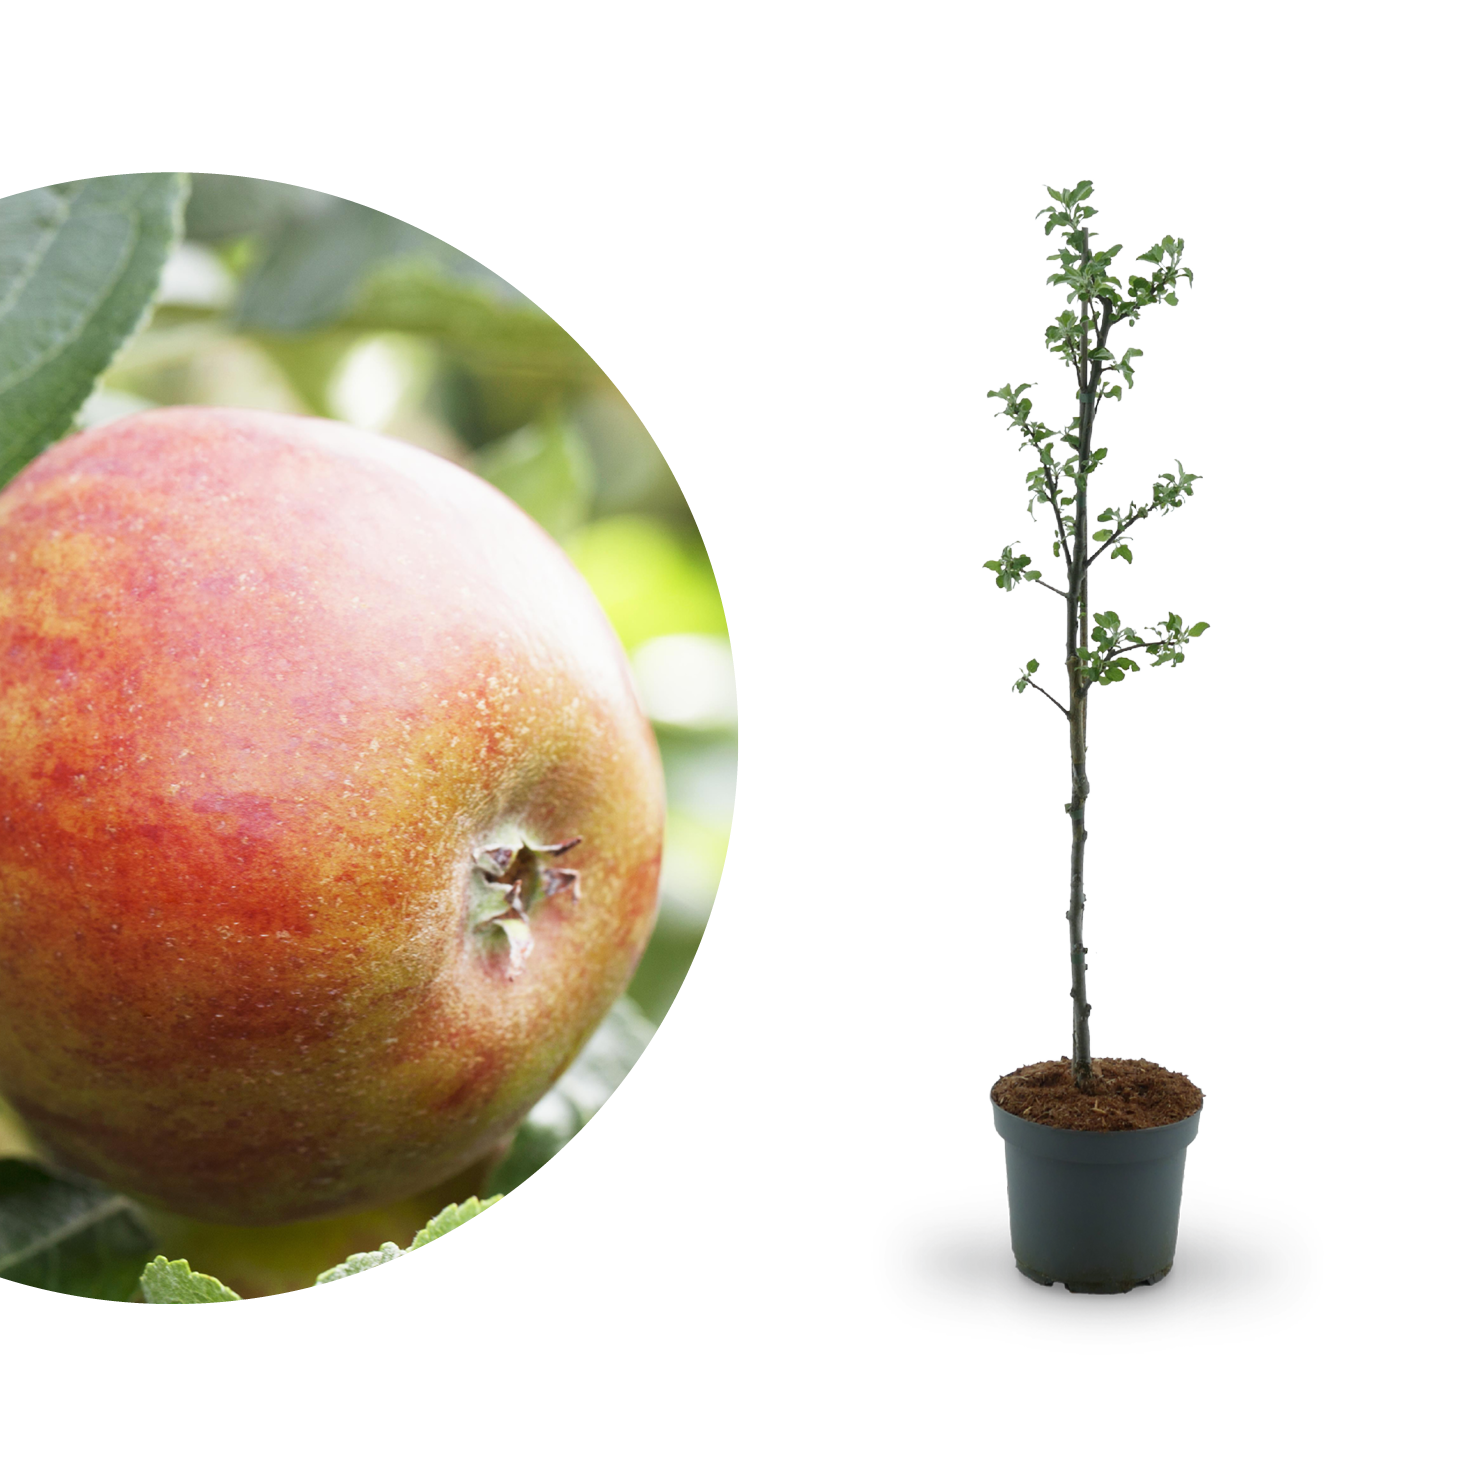 Apfelsorten: 50 - Plantura & saure Apfelsorten frühe süße